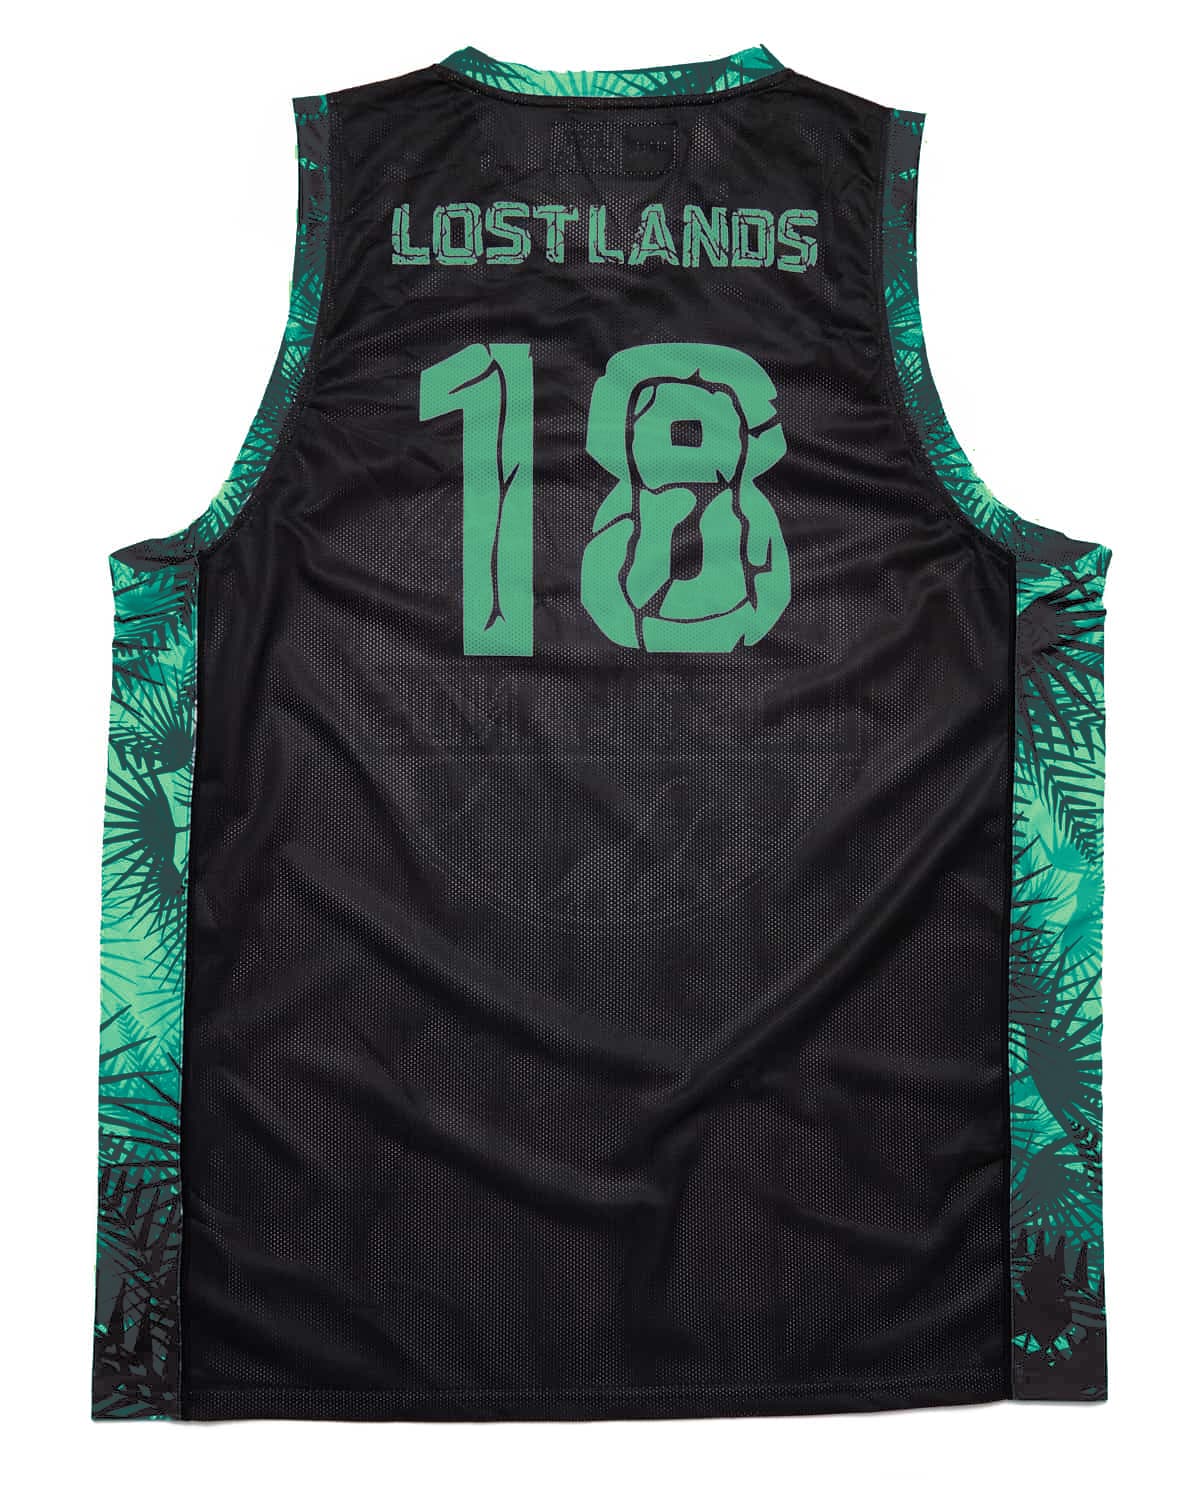 Lost Lands 'Foliage' Basketball Jersey 